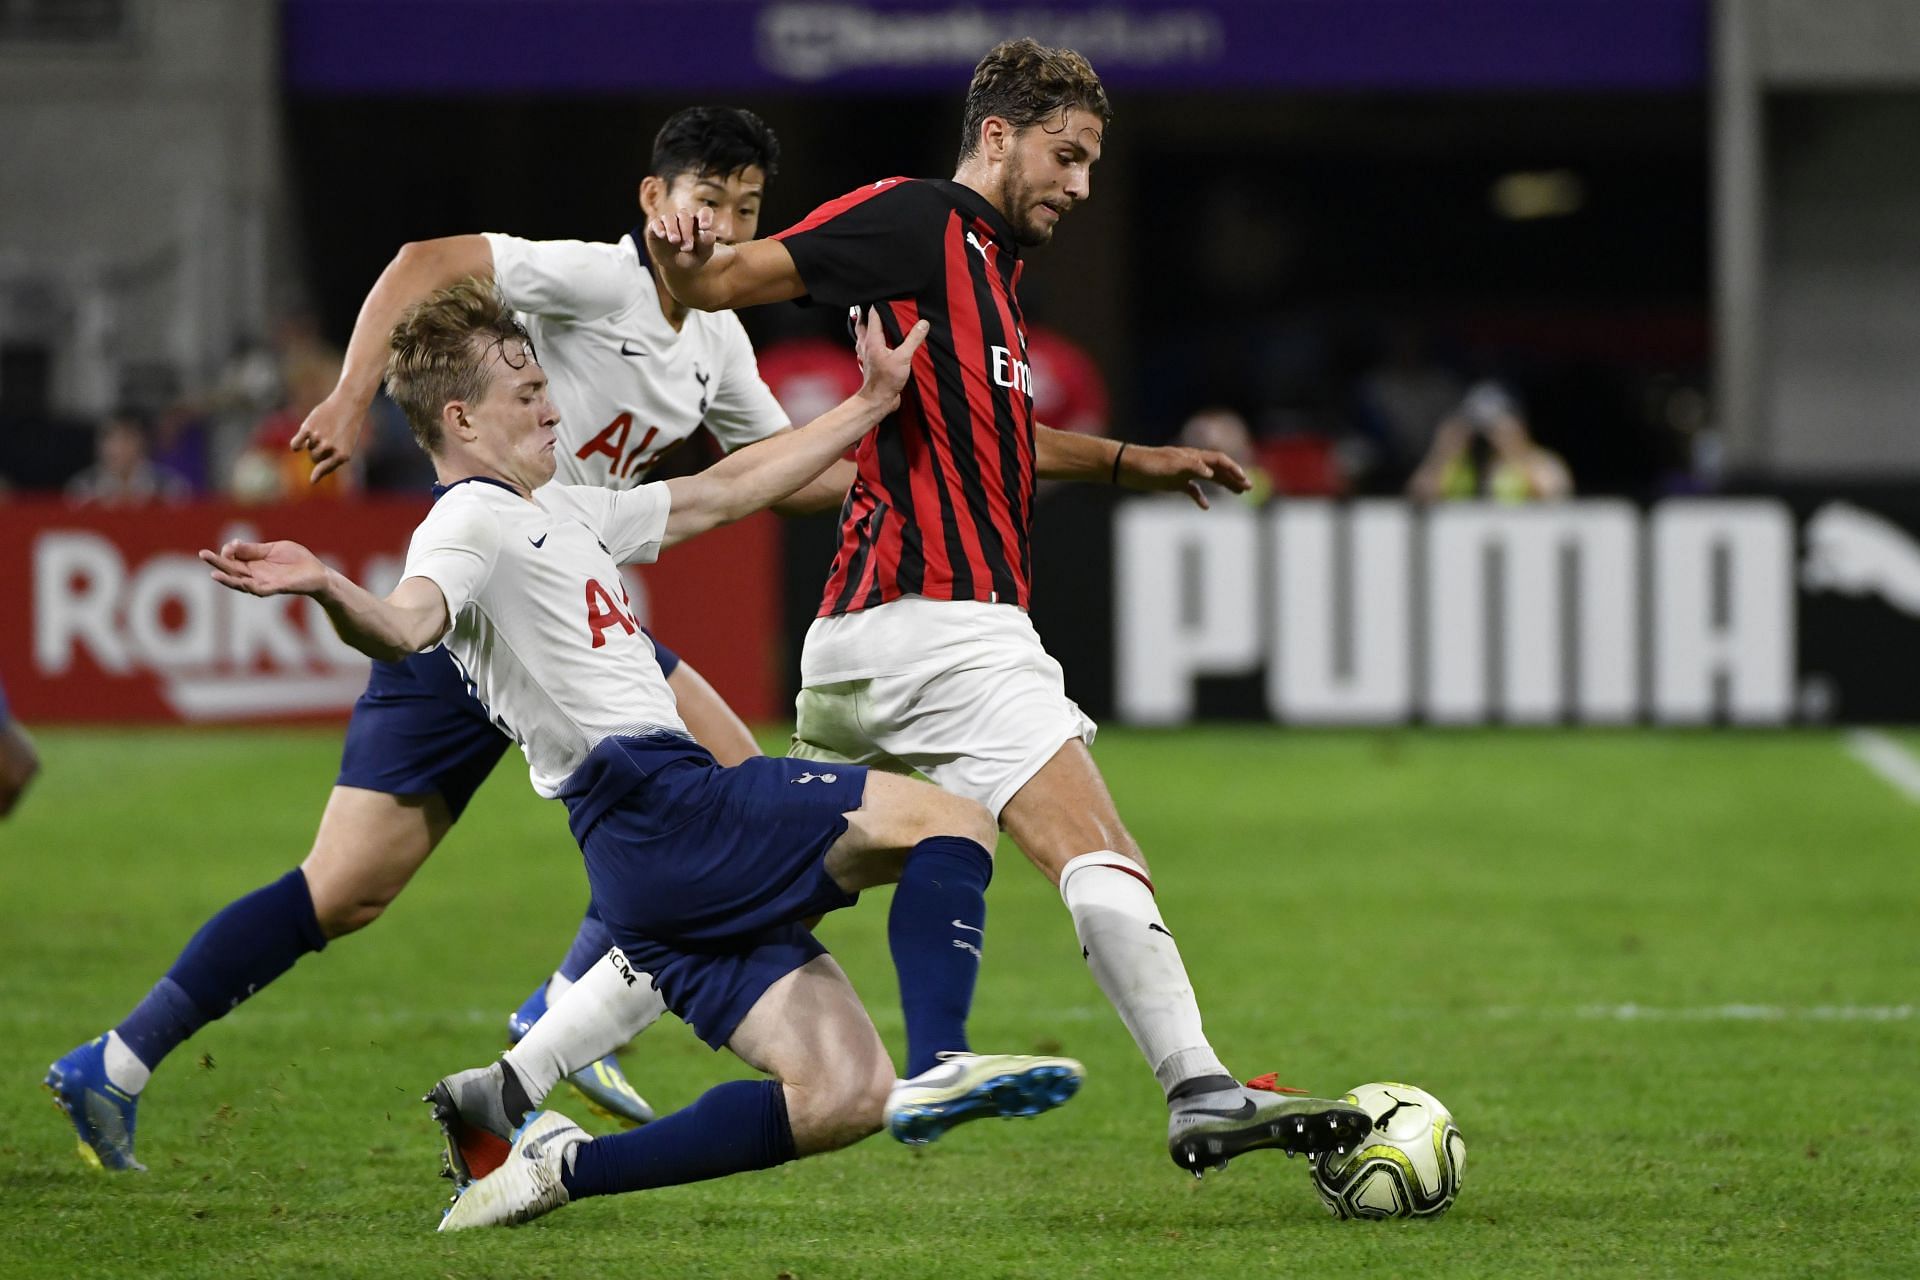 Tottenham Hotspur v AC Milan - International Champions Cup 2018